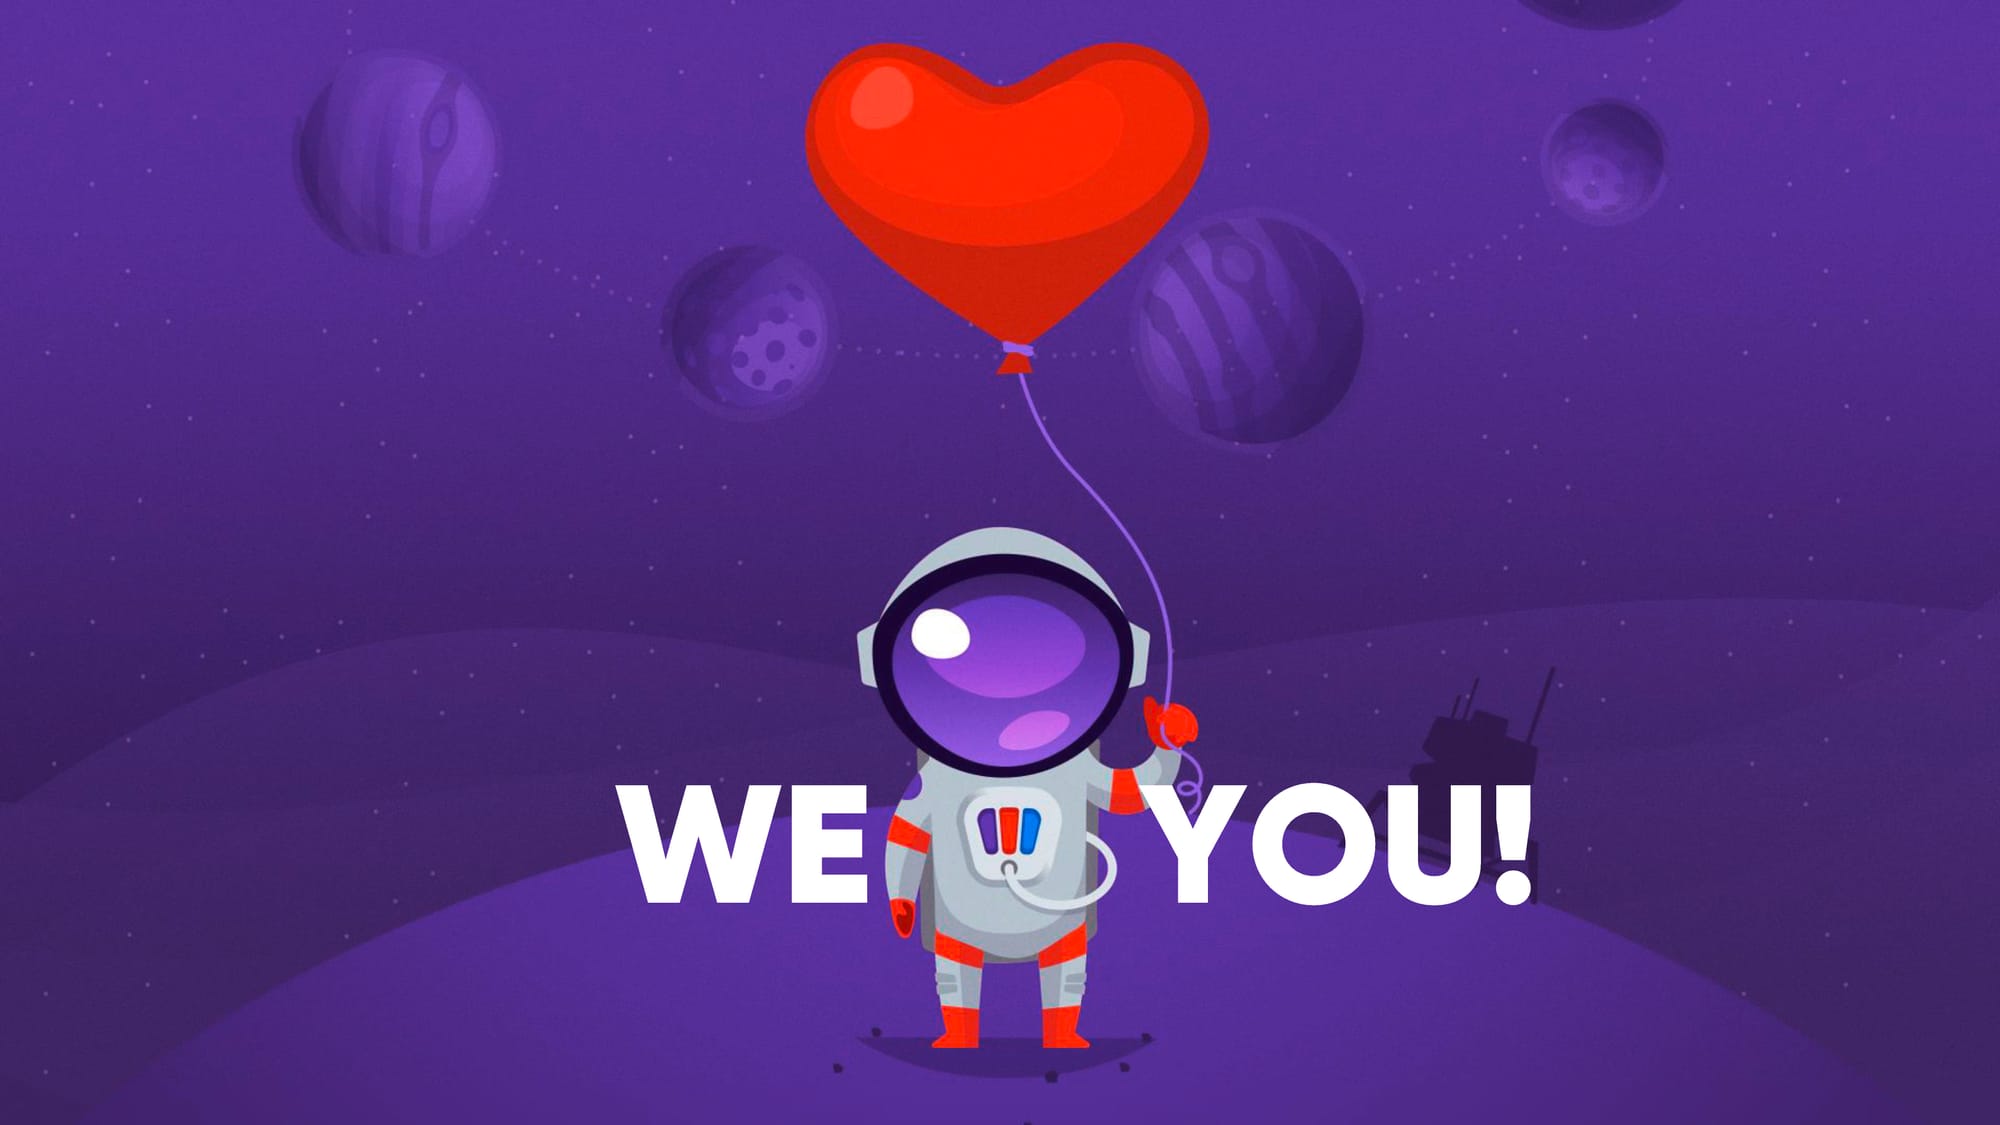 Pimconaut hat Herzballon in der Hand: We love you!